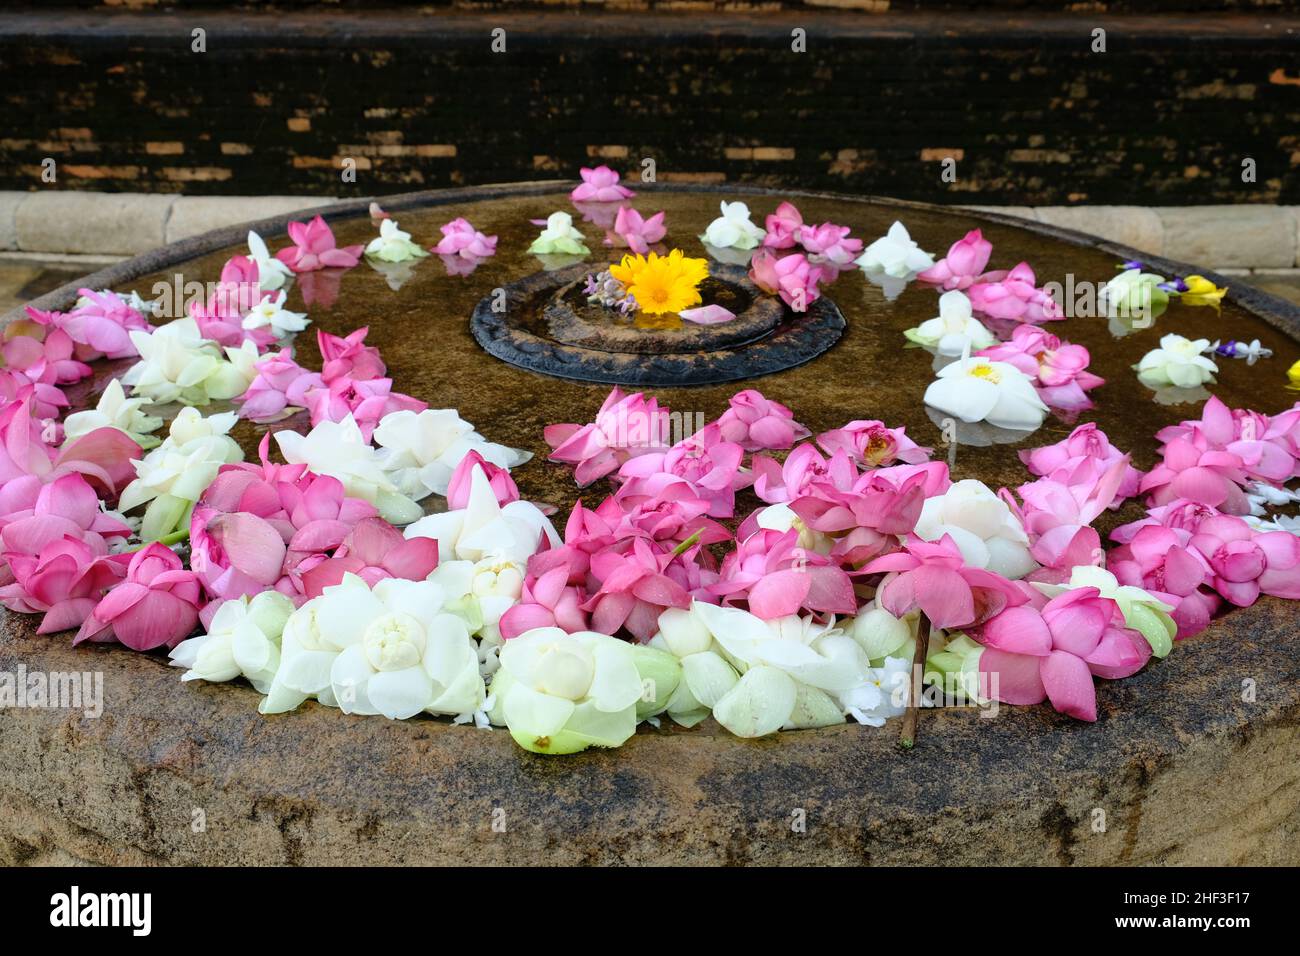 Sri Lanka Anuradhapura - belles fleurs de lotus rose et blanc dans un bol d'eau Banque D'Images